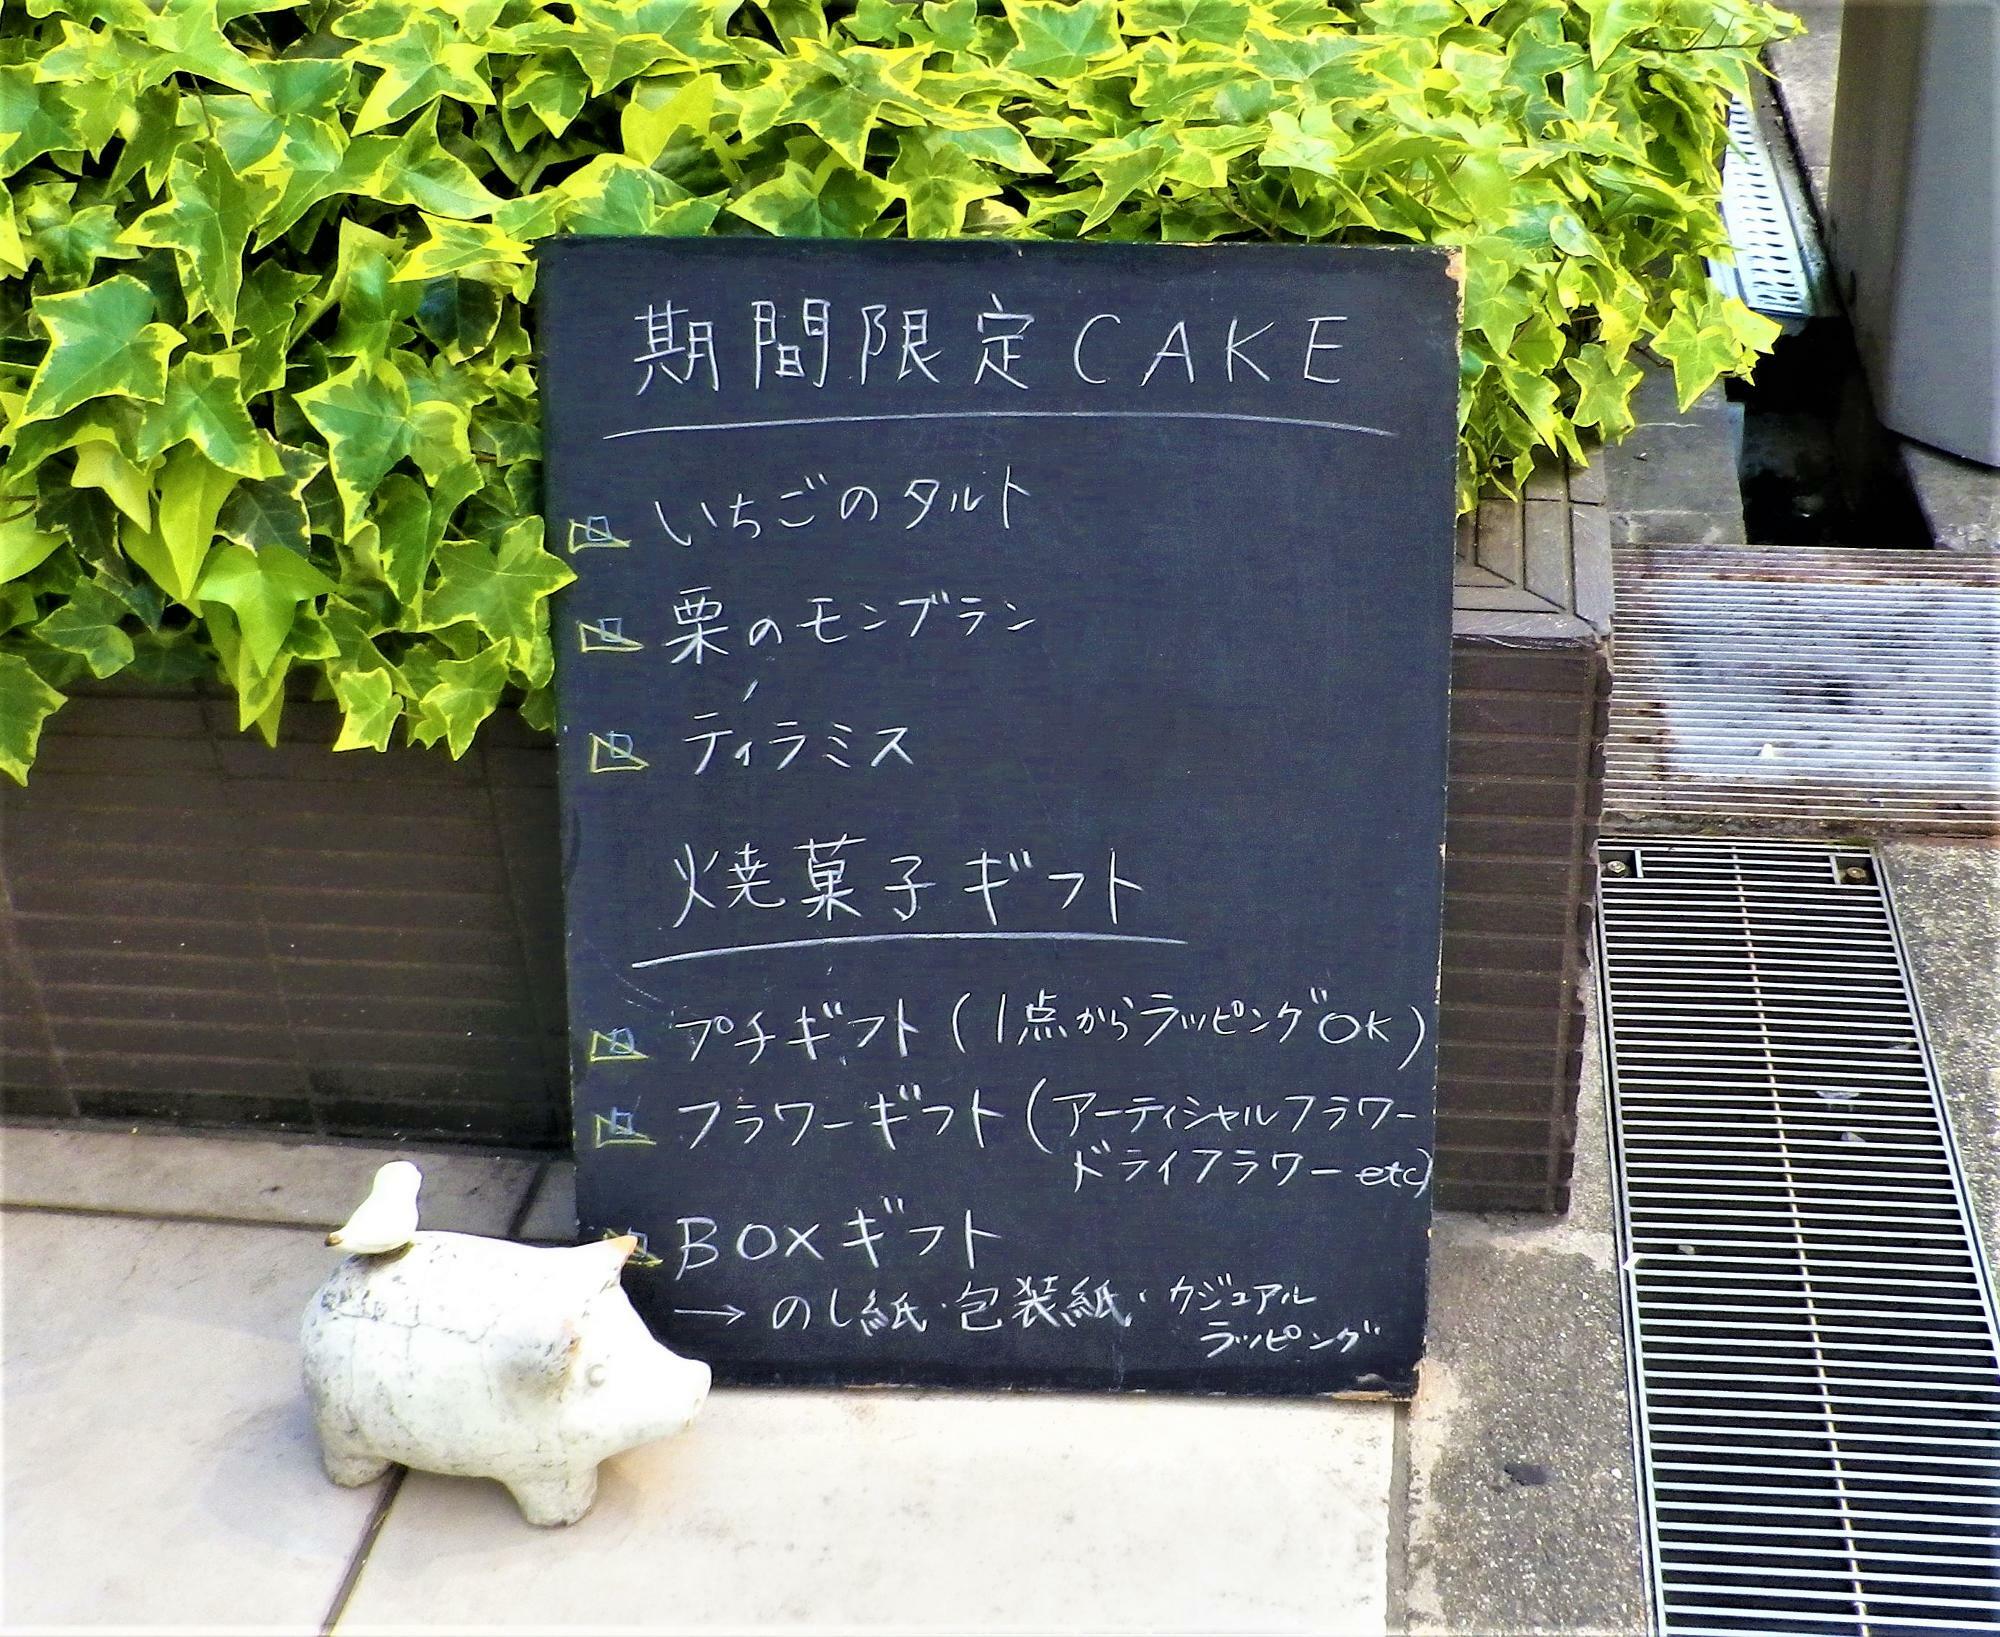 期間限定のケーキやおすすめの焼菓子ギフトが書かれた黒板。